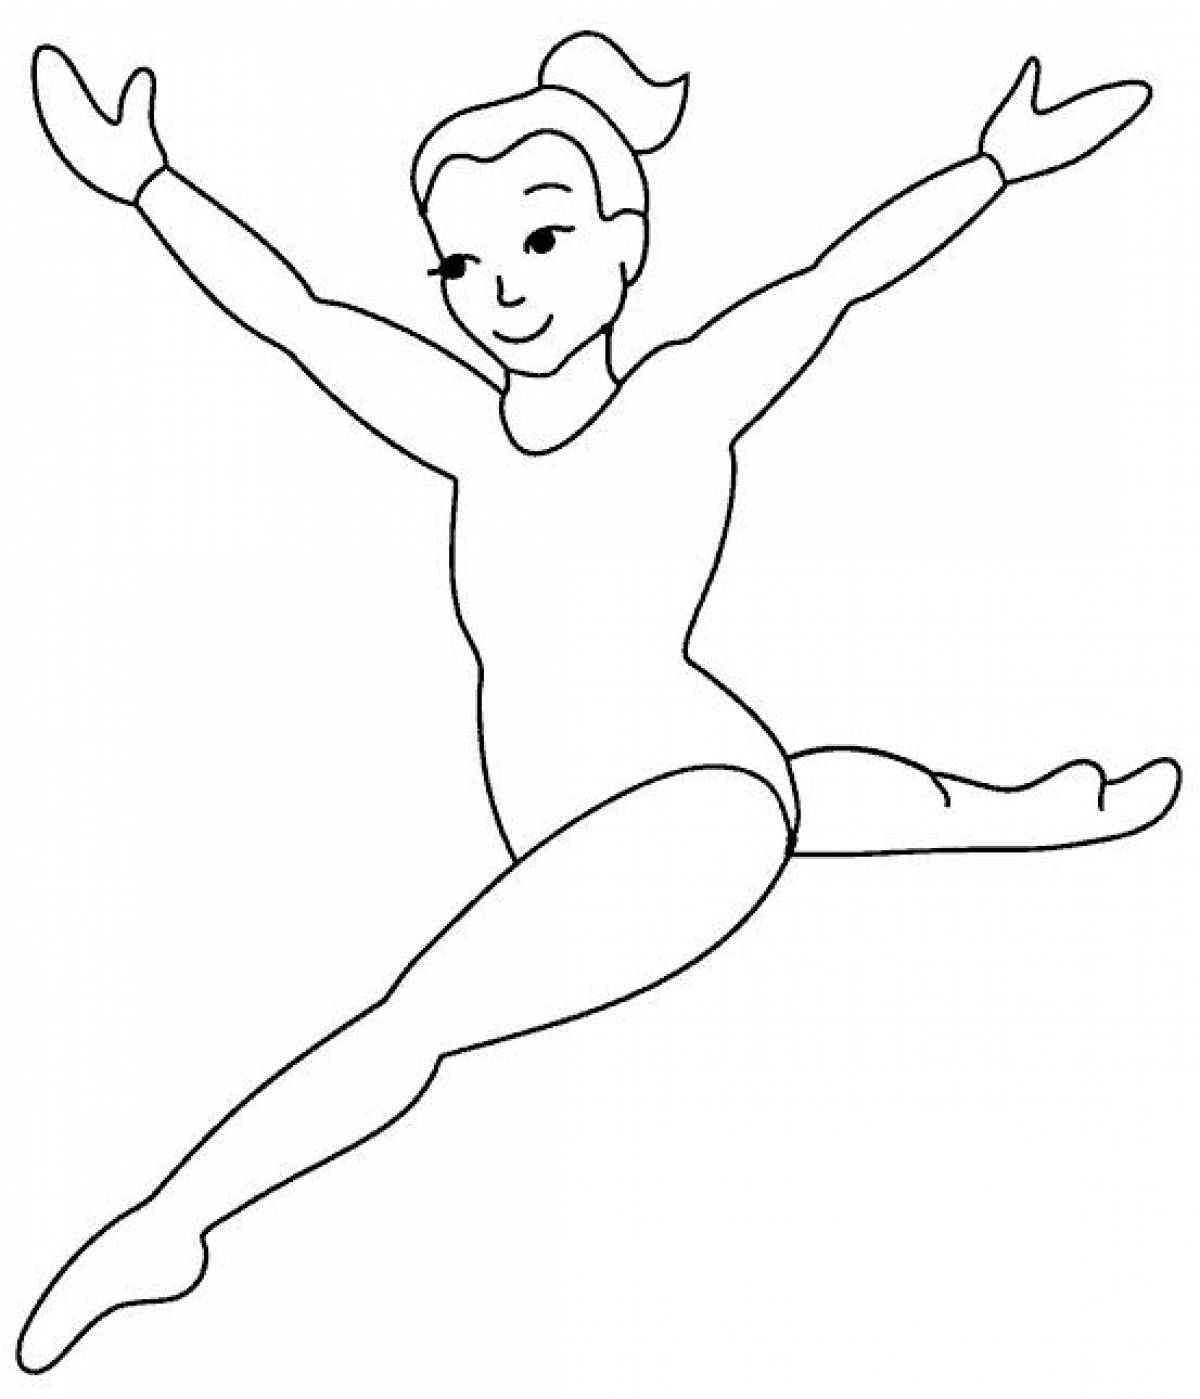 Rhythmic gymnast